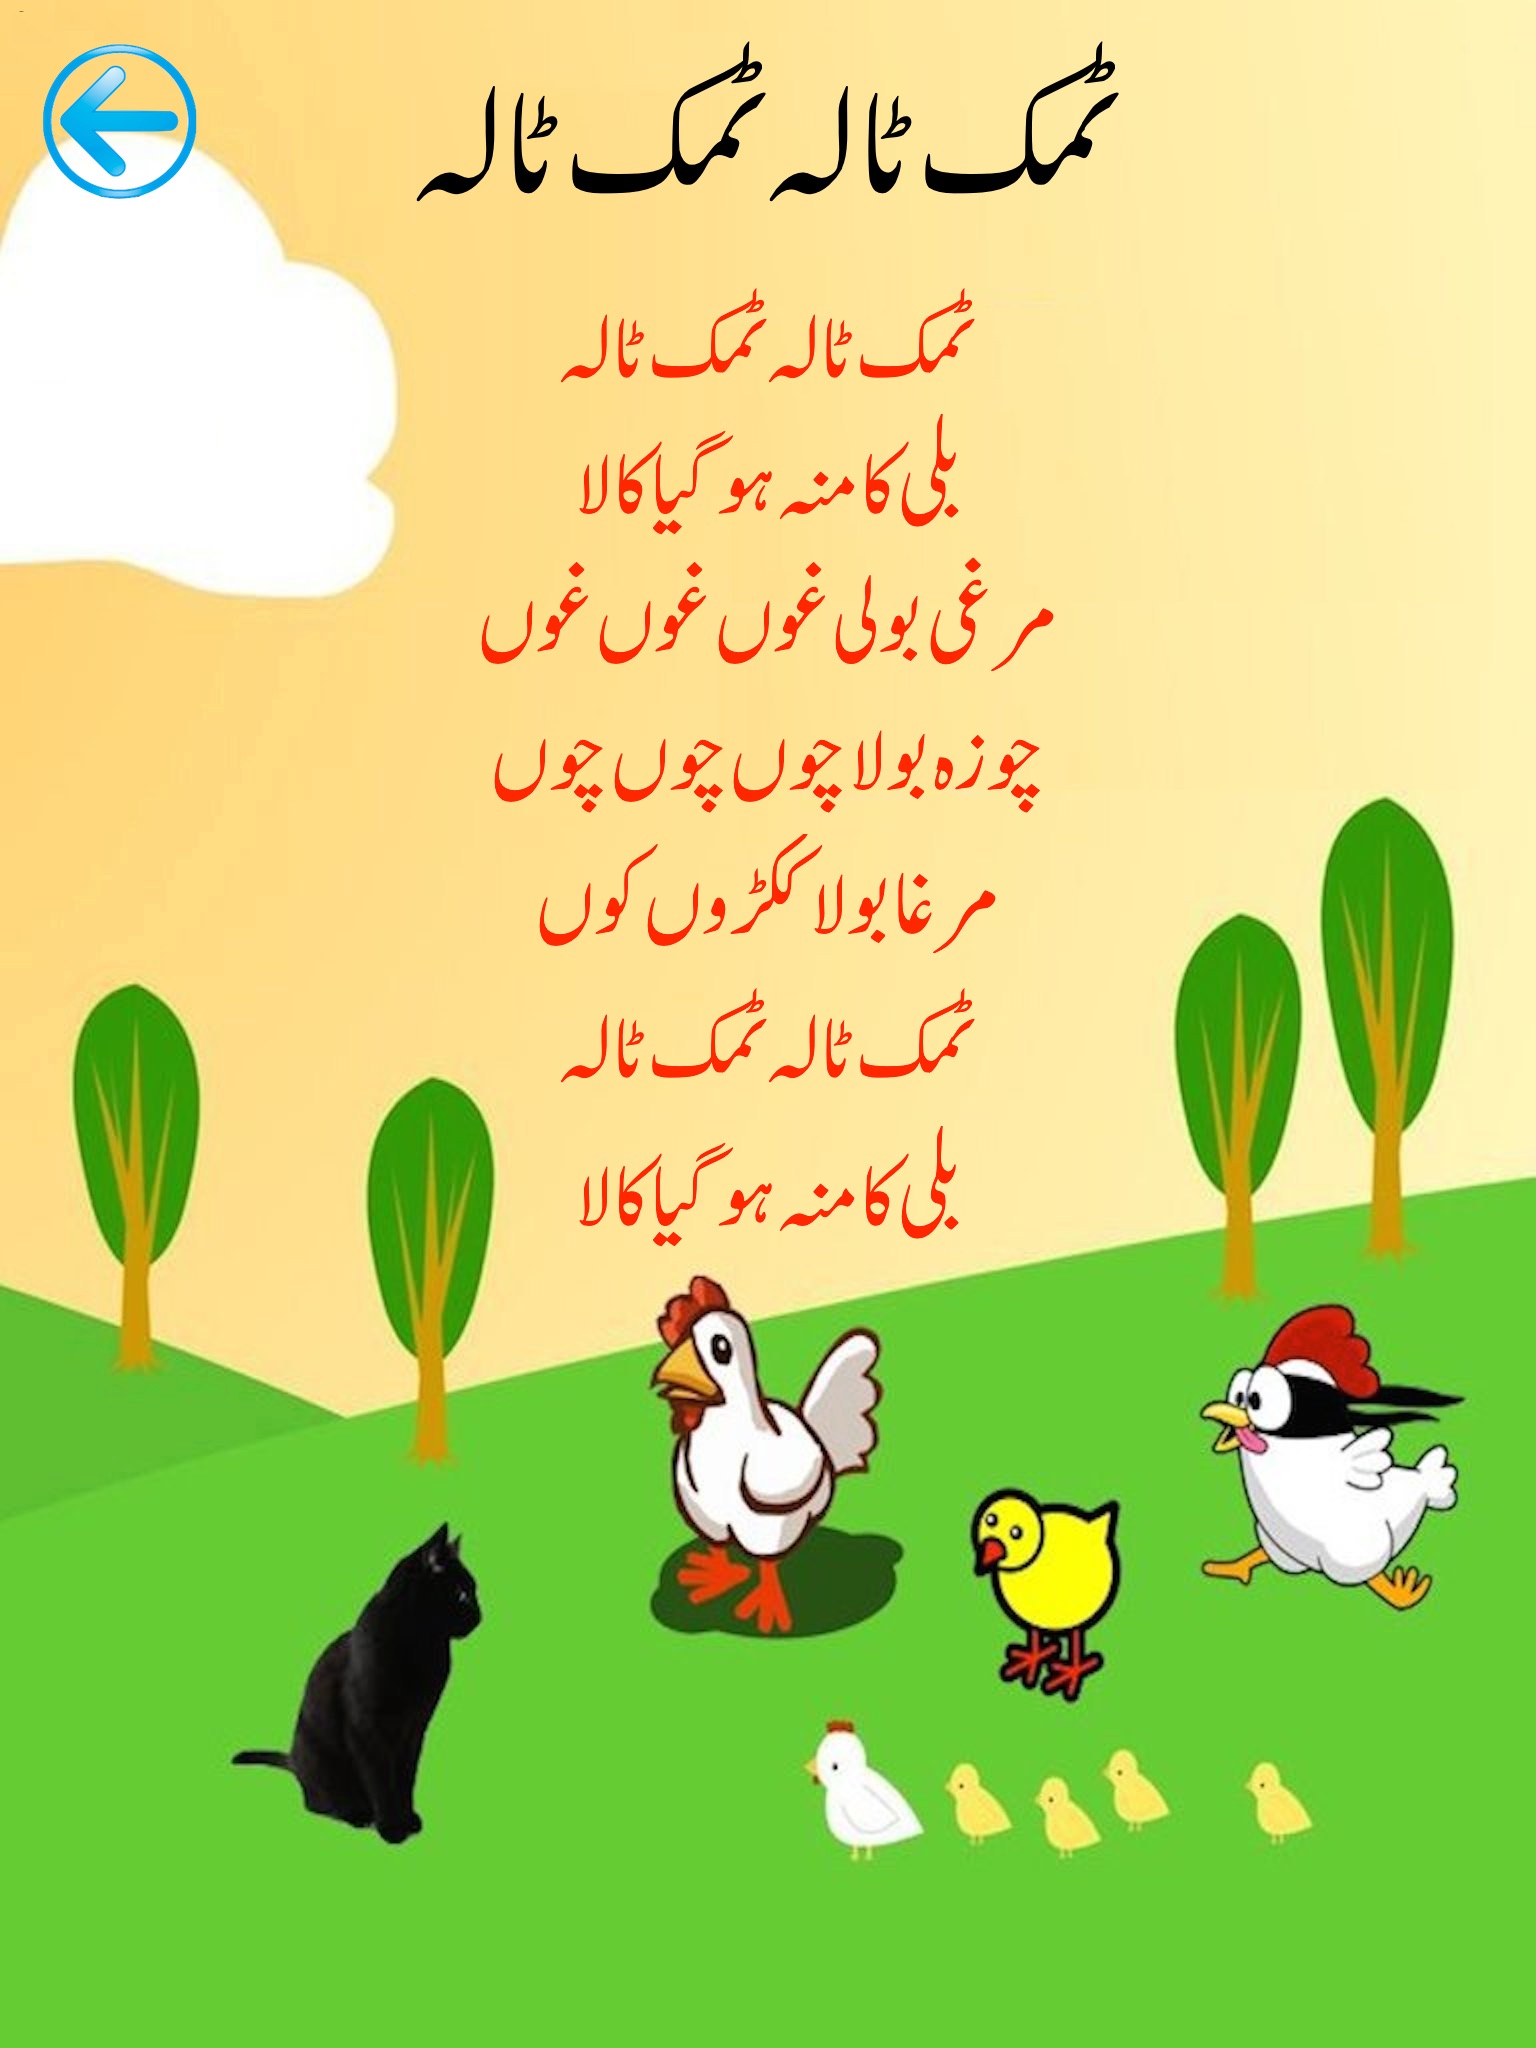 My Rhymes Pakistan urdu poetry screenshot 4